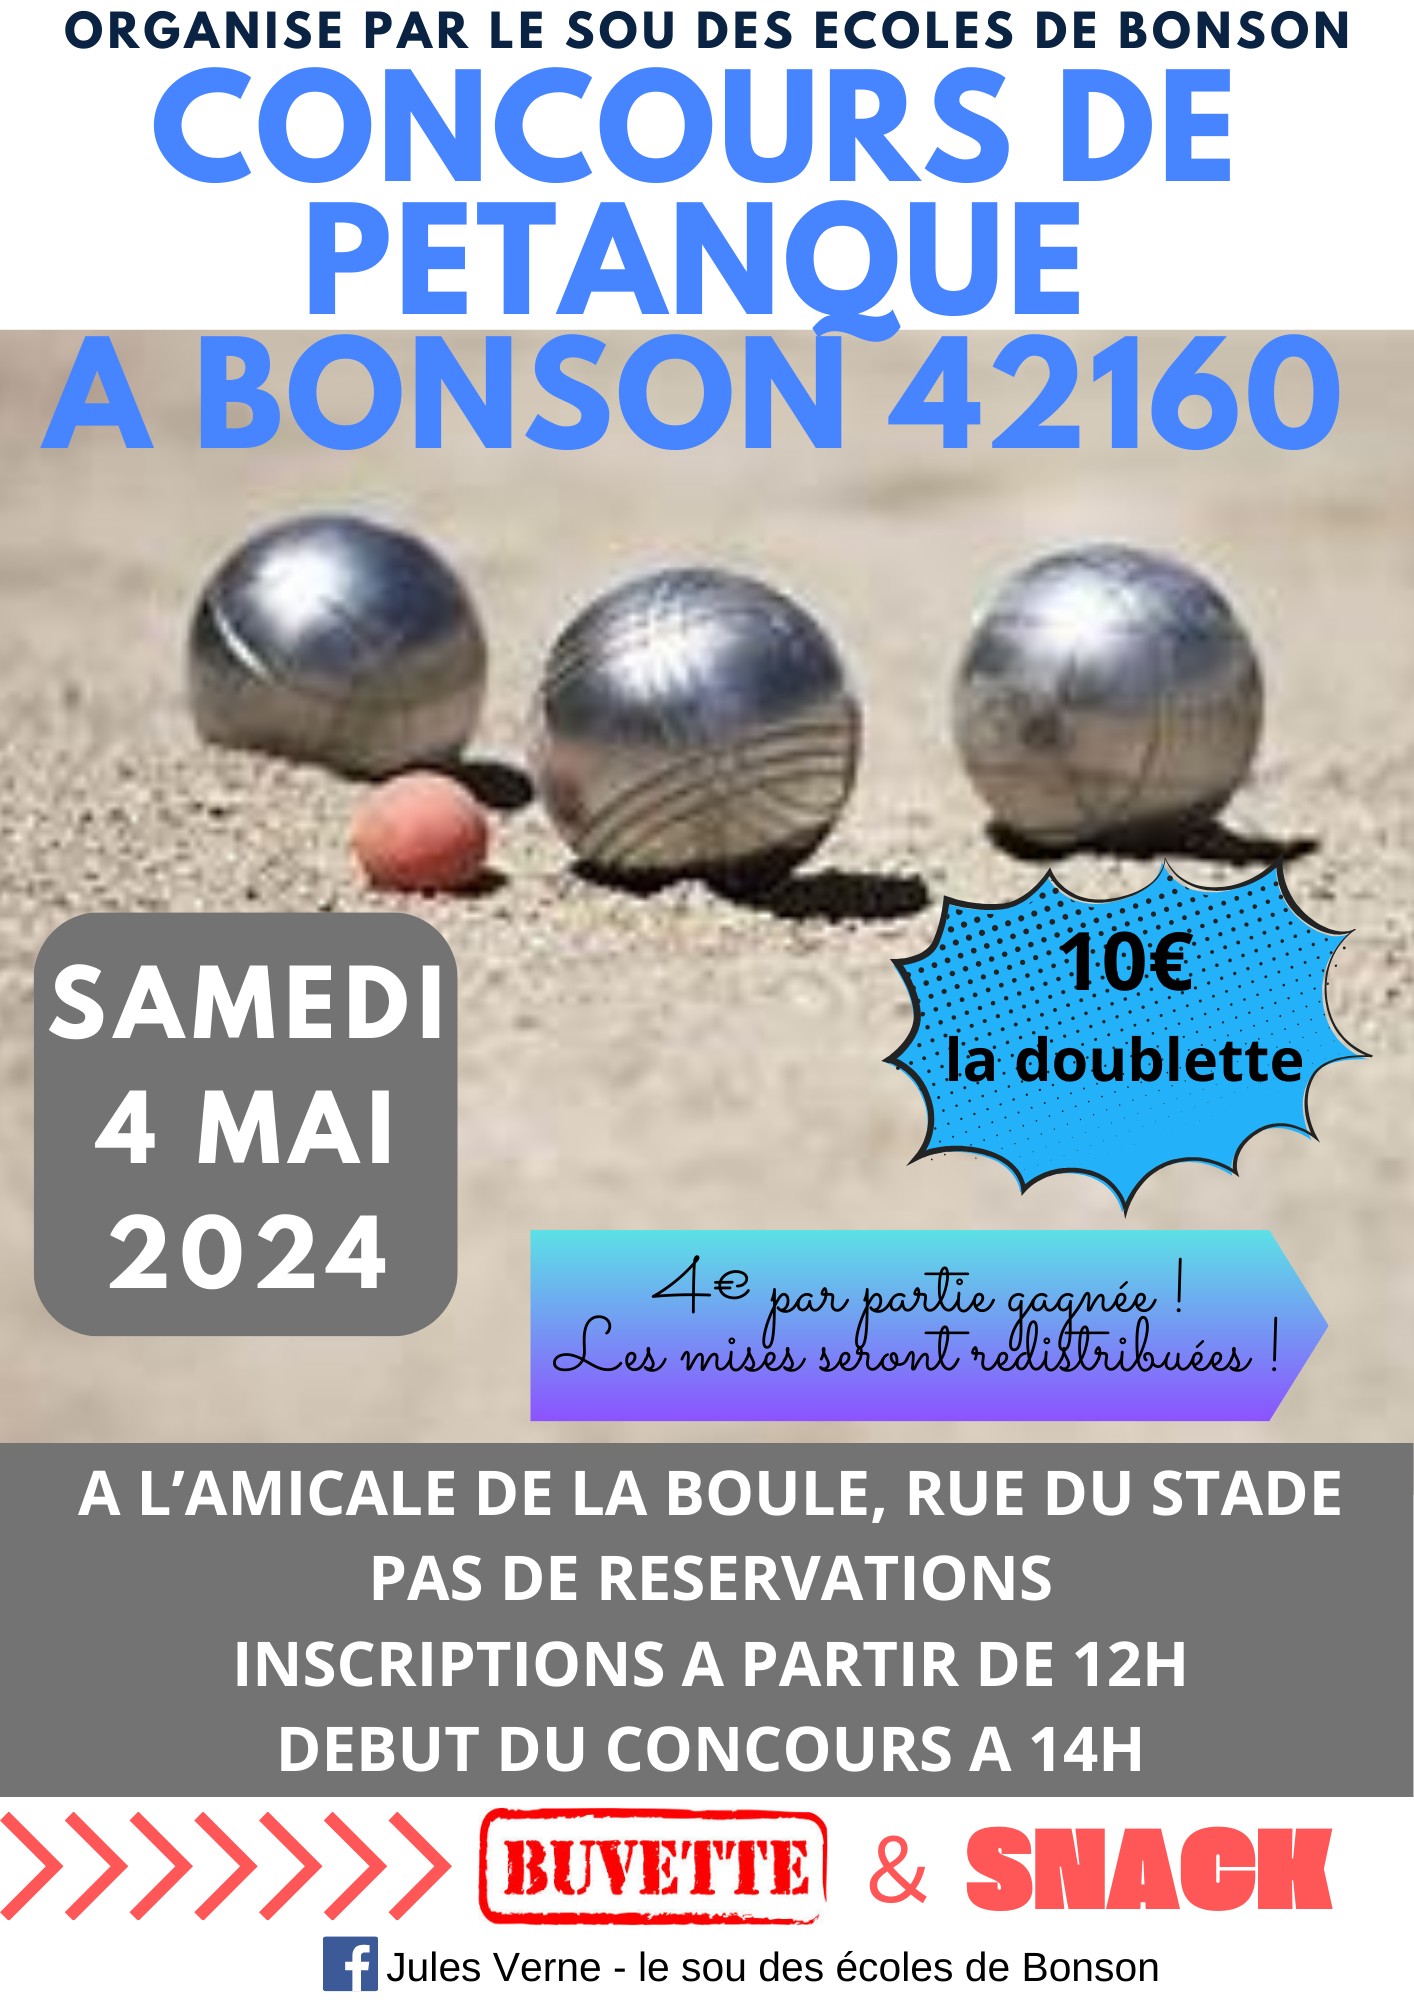 Concours en Doublette le 4 mai 2024 - Bonson - 42160